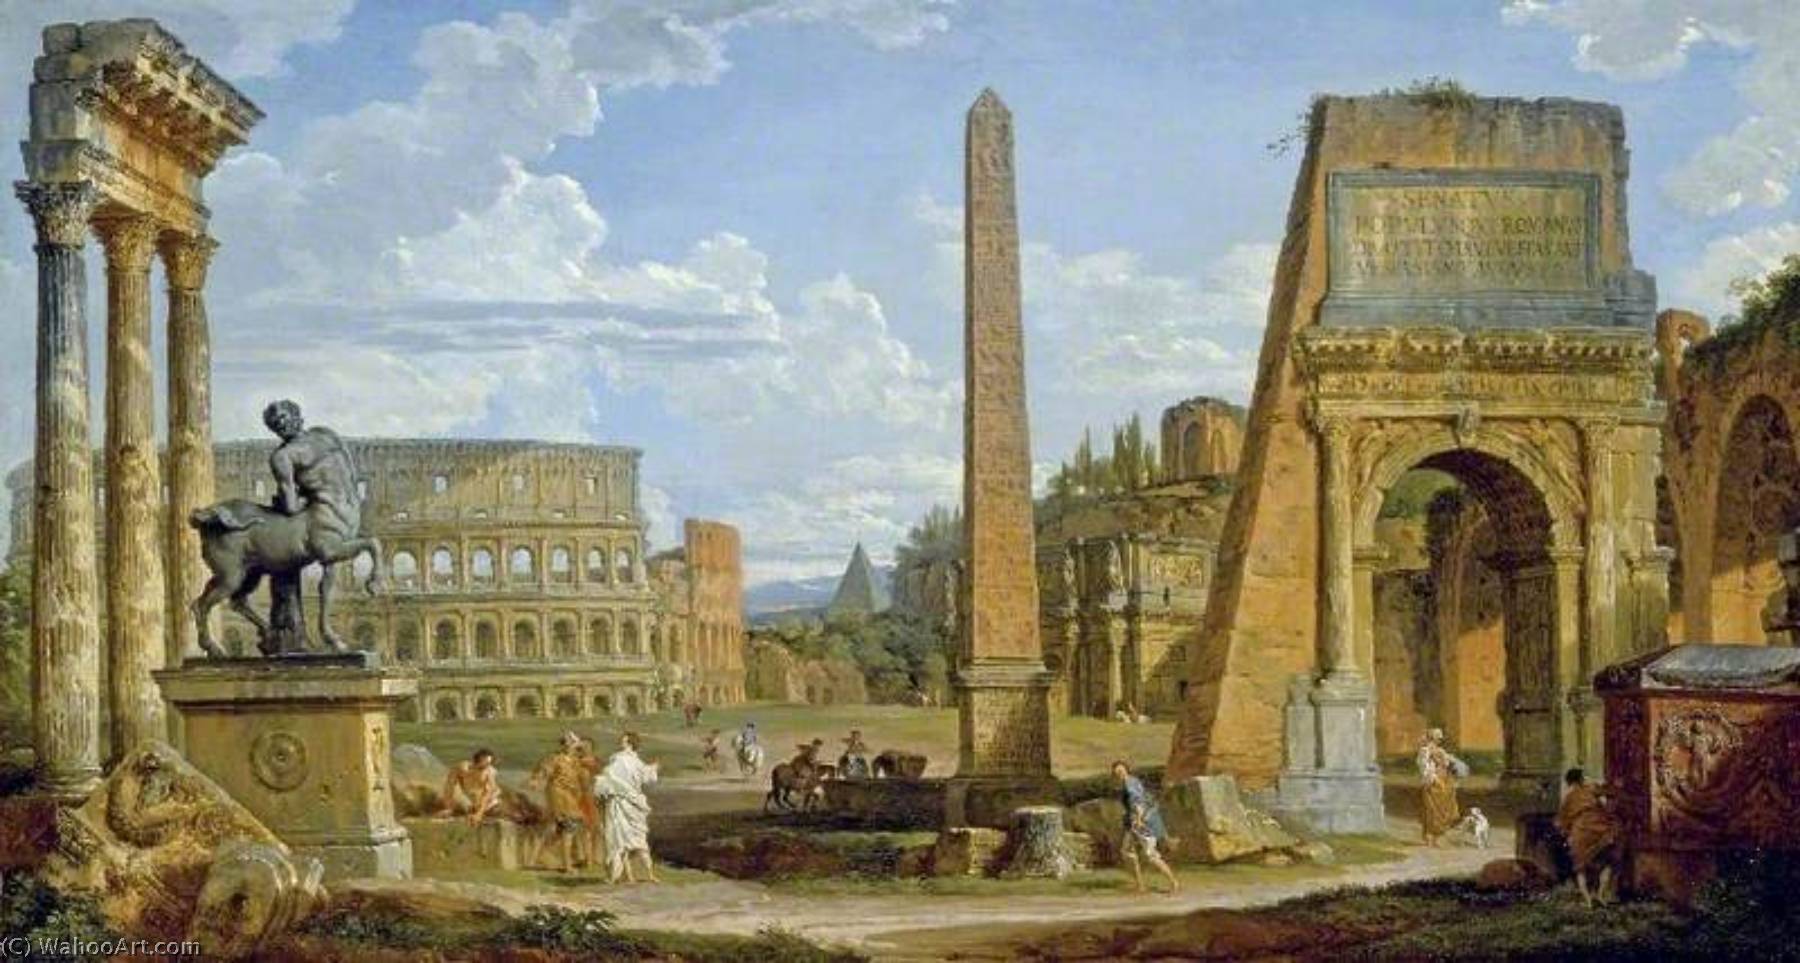 WikiOO.org - Encyclopedia of Fine Arts - Malba, Artwork Giovanni Paolo Pannini - Capriccio of Roman Ruins with the Colosseum